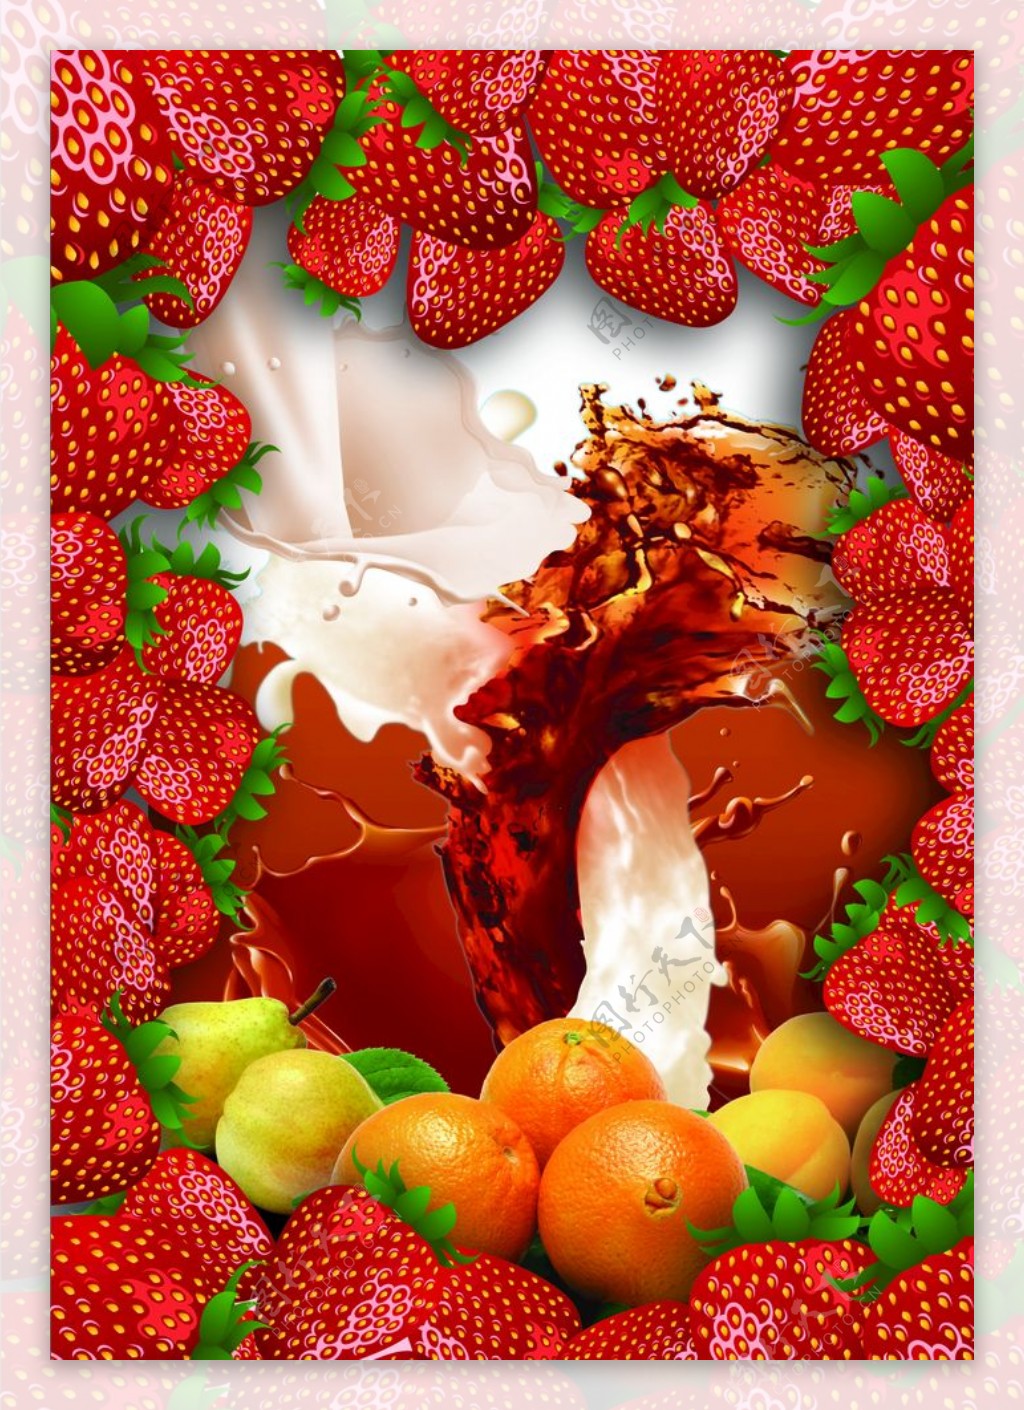 水果草莓牛奶咖啡图片